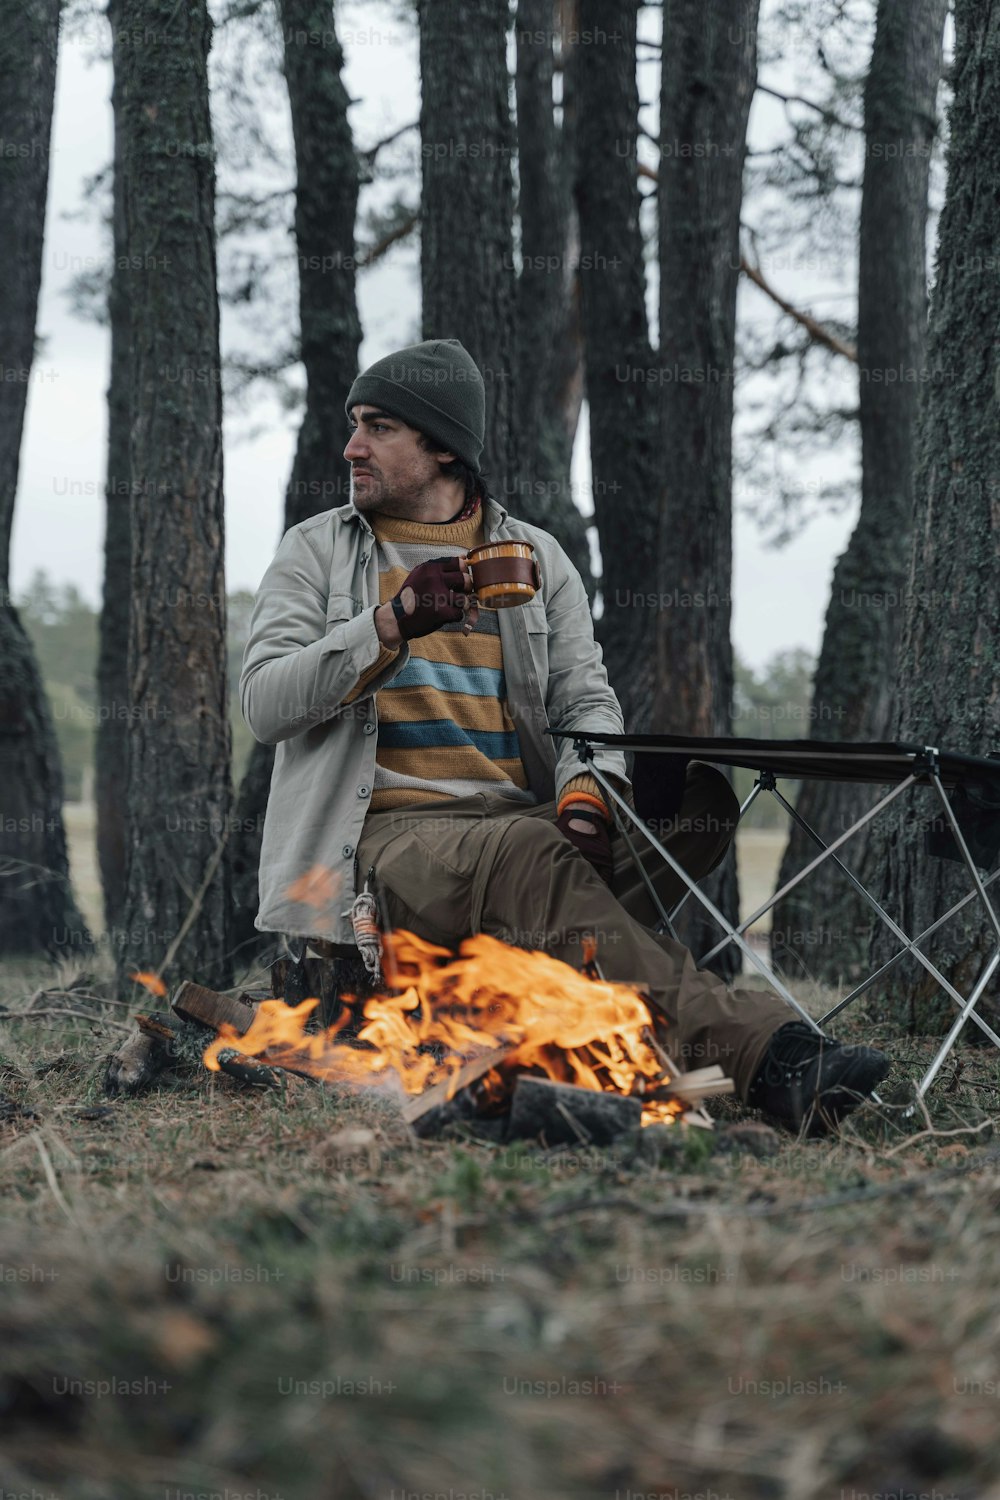 Un homme assis près d’un feu dans une forêt